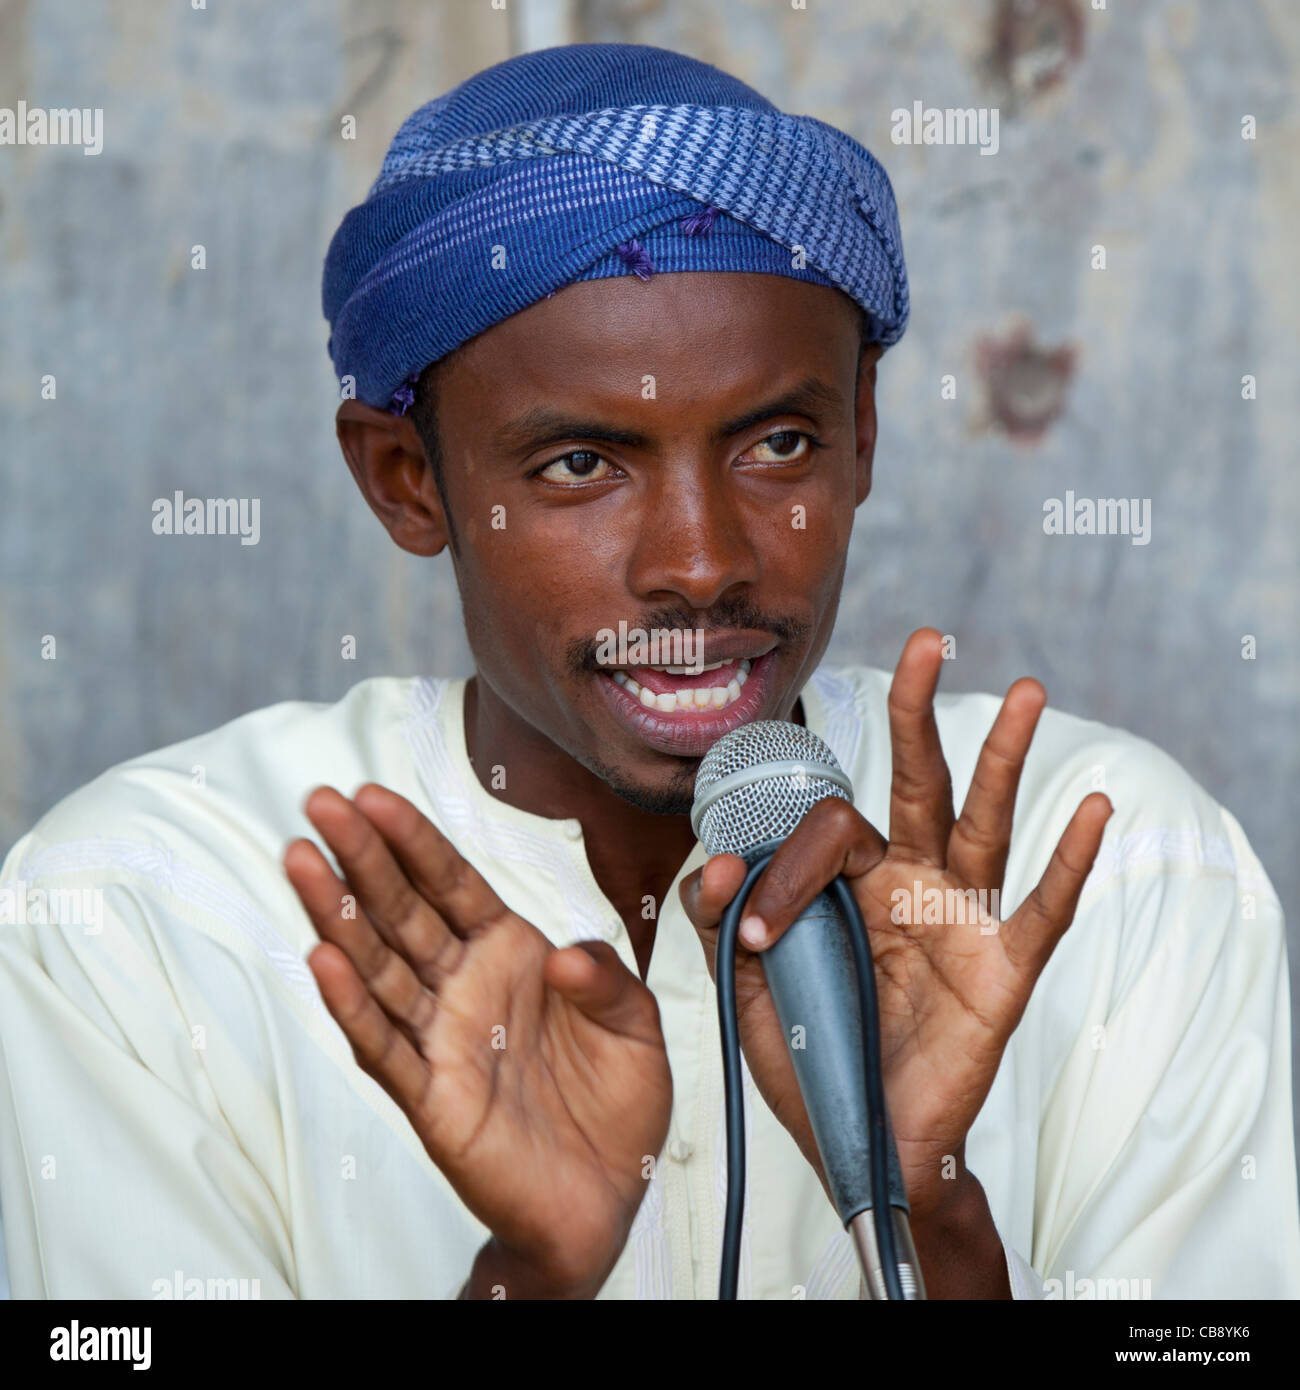 Turbante hombre hablando en el micrófono, Lamu Kenya Fotografía de stock -  Alamy